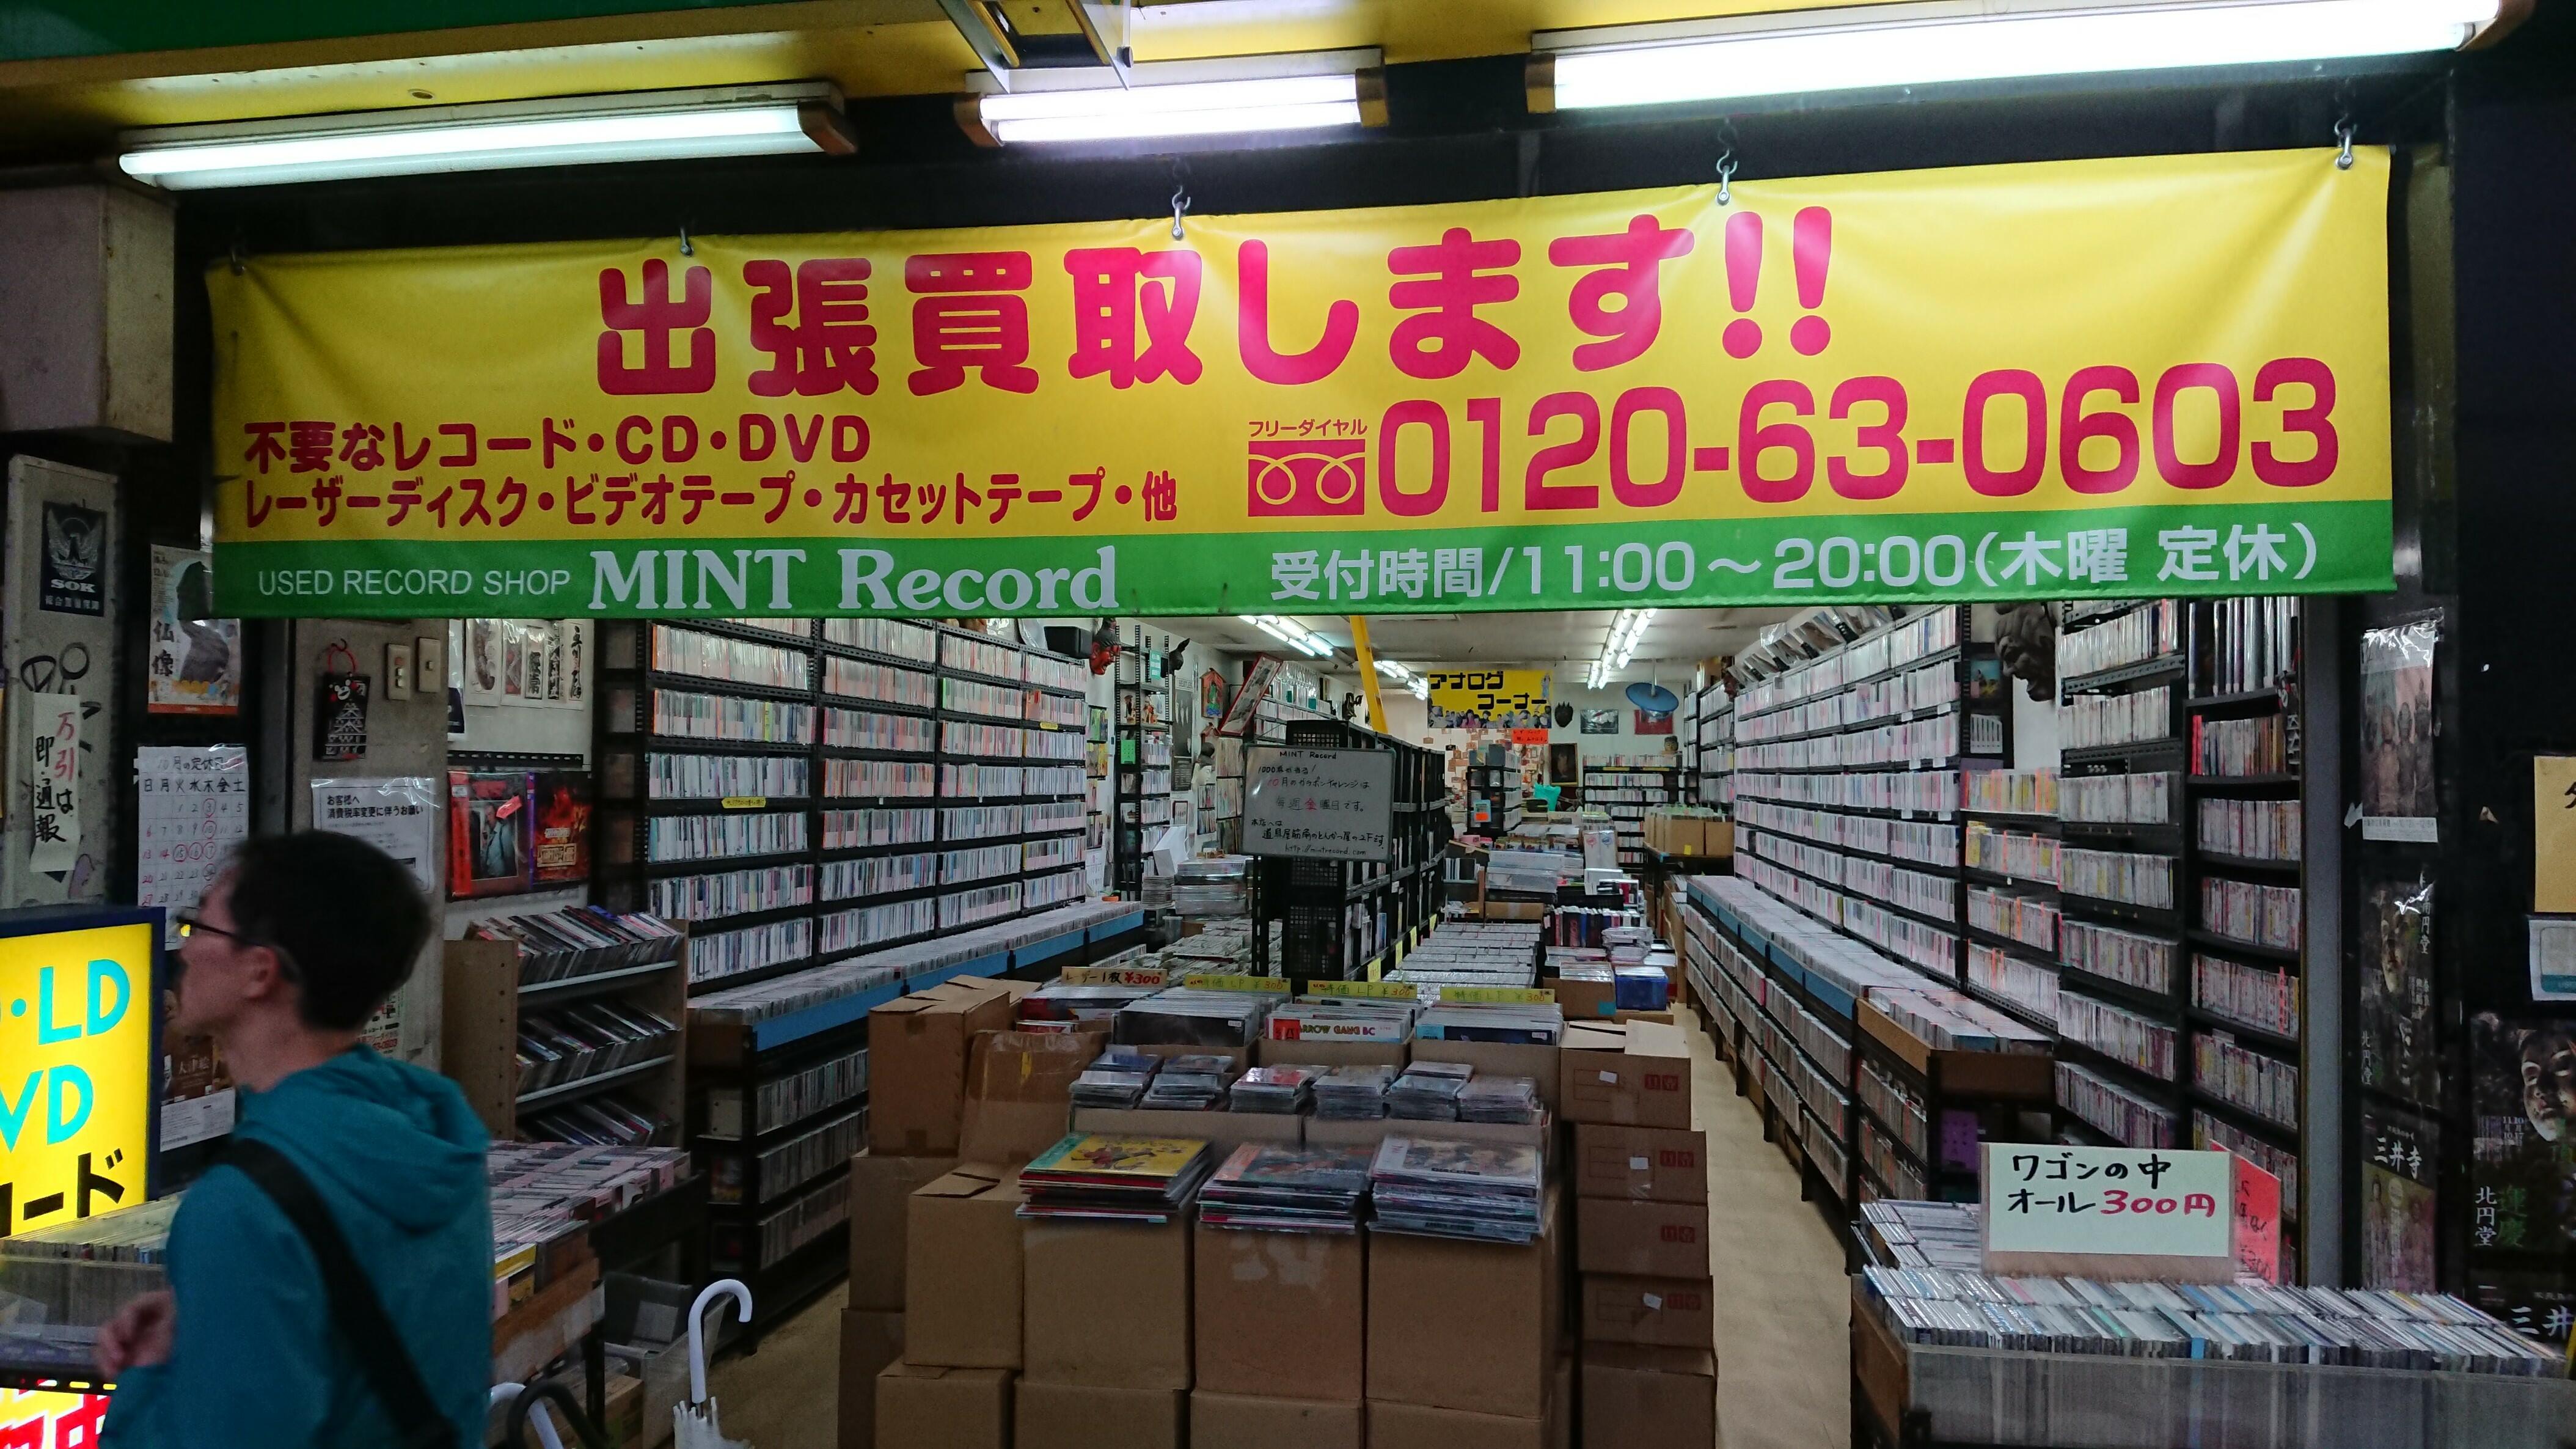 ミント・レコード2 - 大阪市浪速区日本橋/CD・DVD・ビデオ・レコード店 